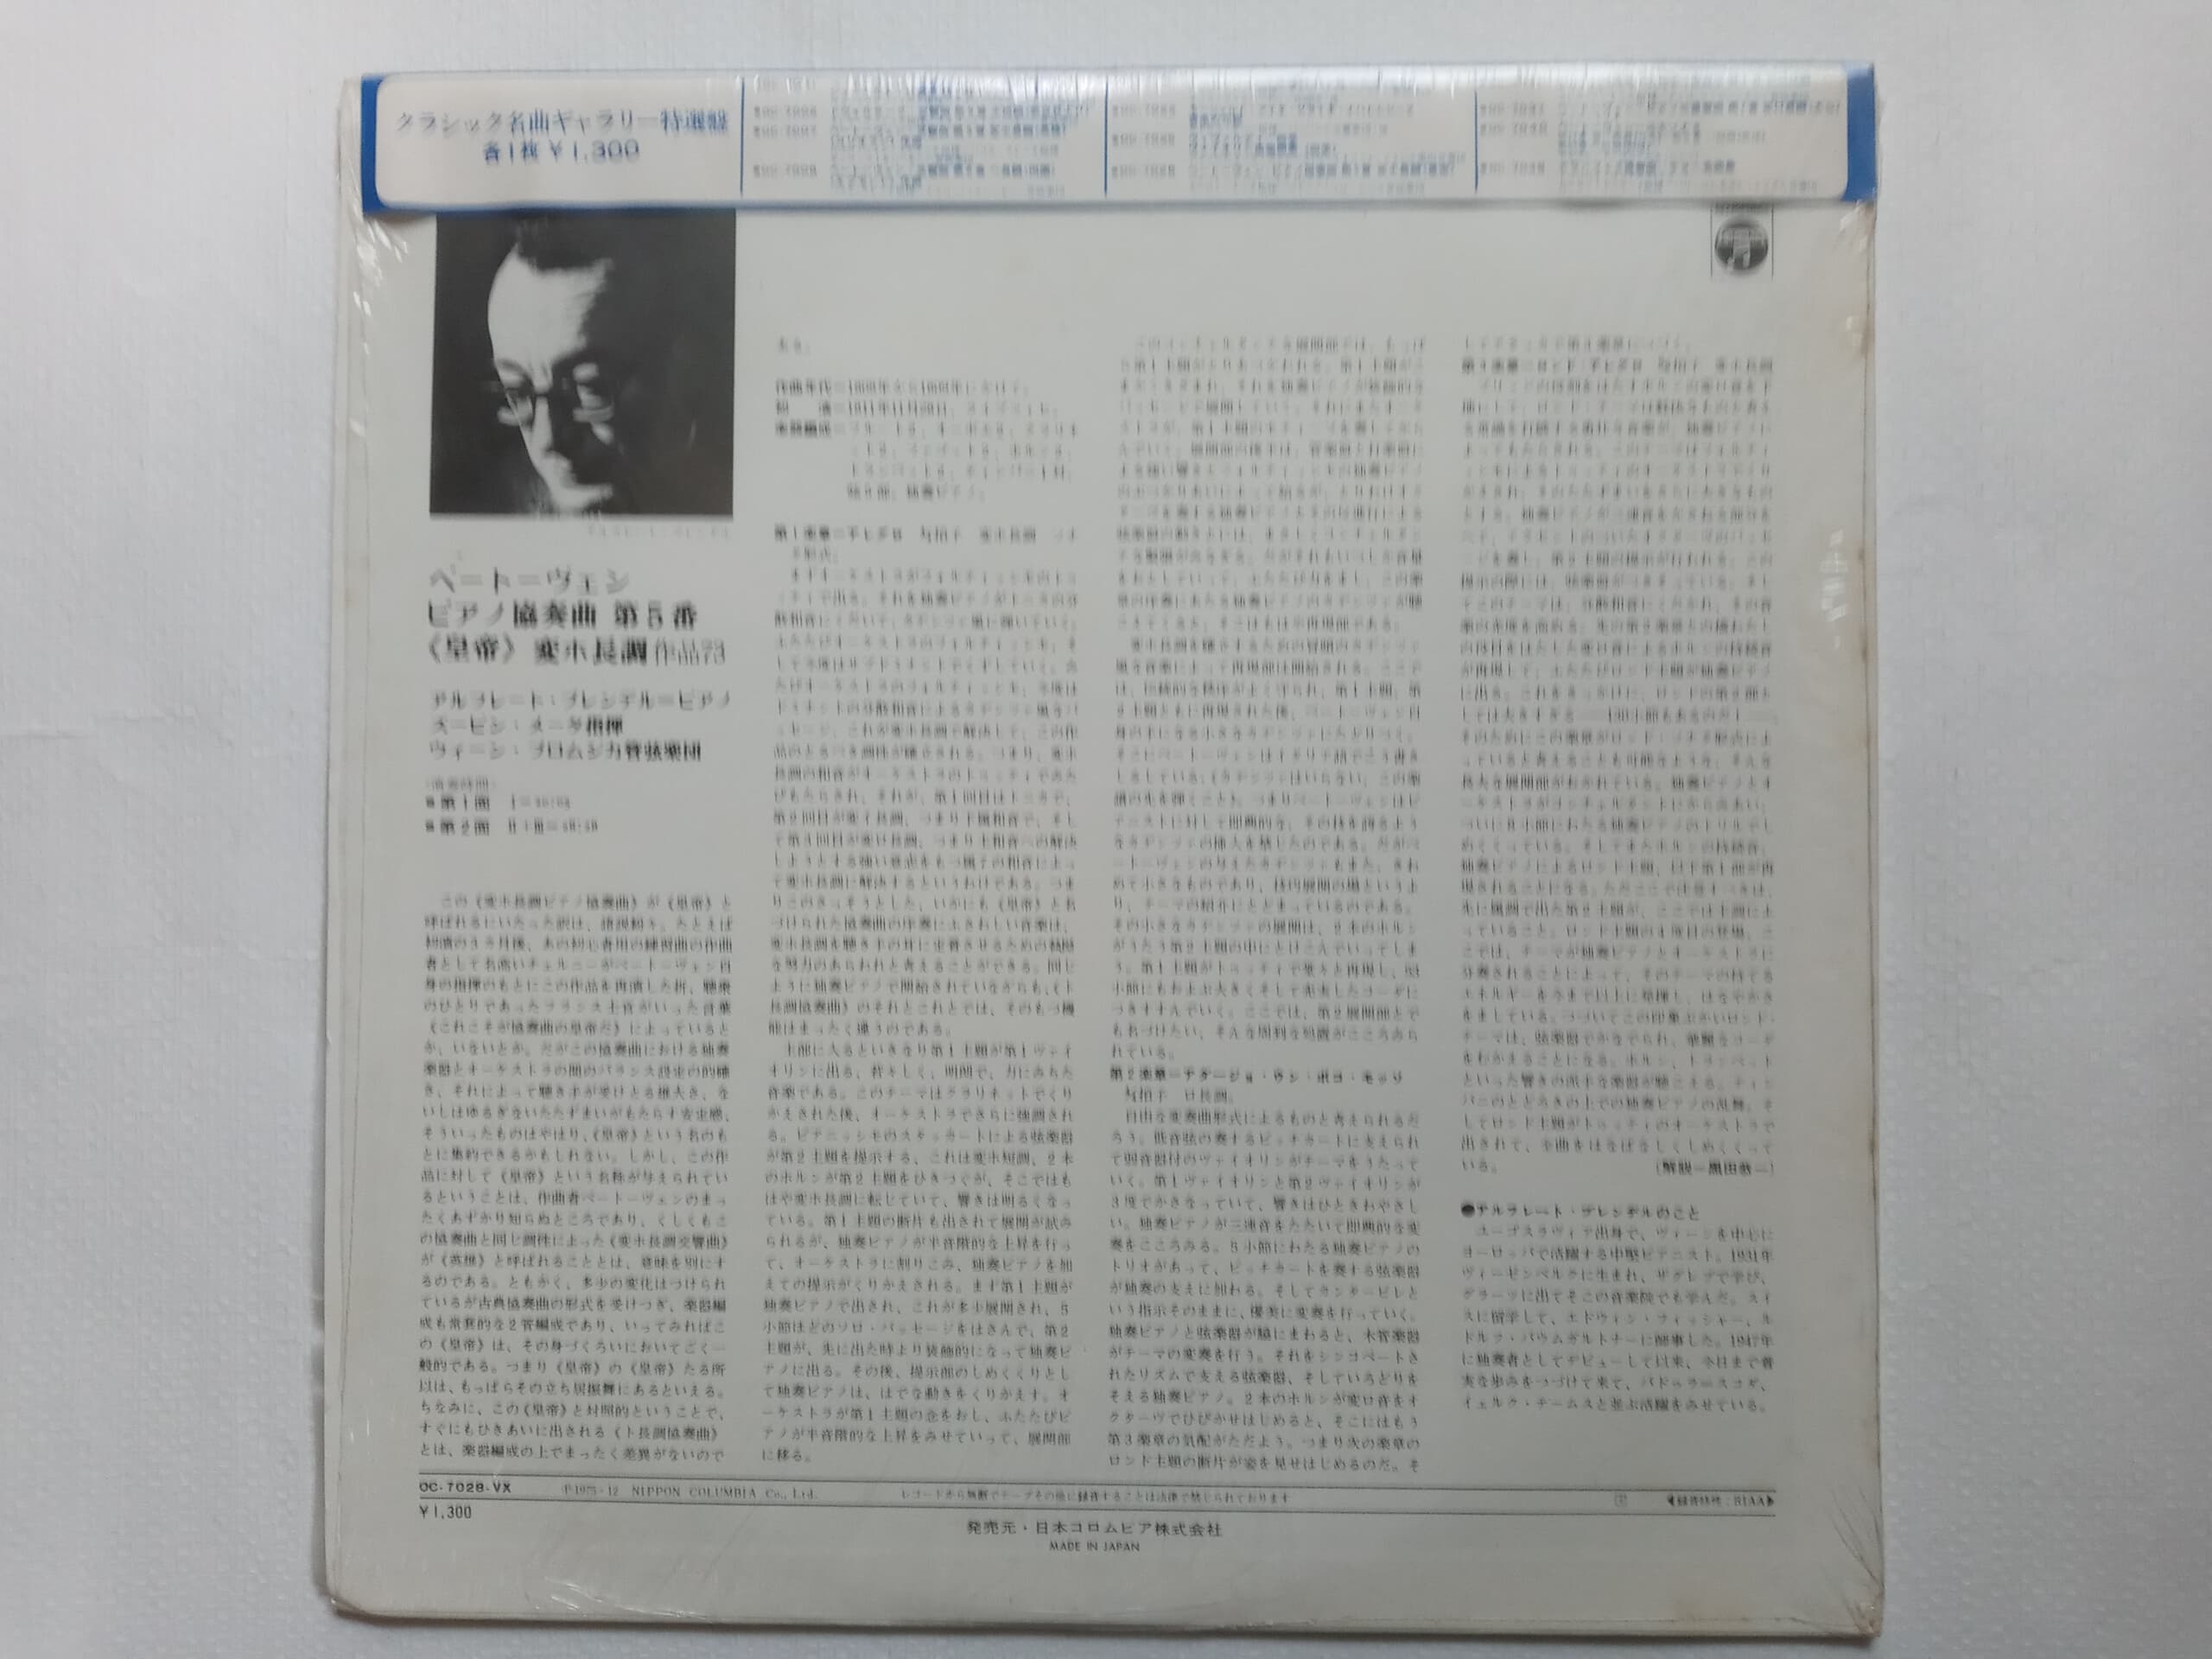 LP(수입) 베토벤: 피아노 협주곡 5번 황제 - 알프레드 브렌델 / 주빈 메타